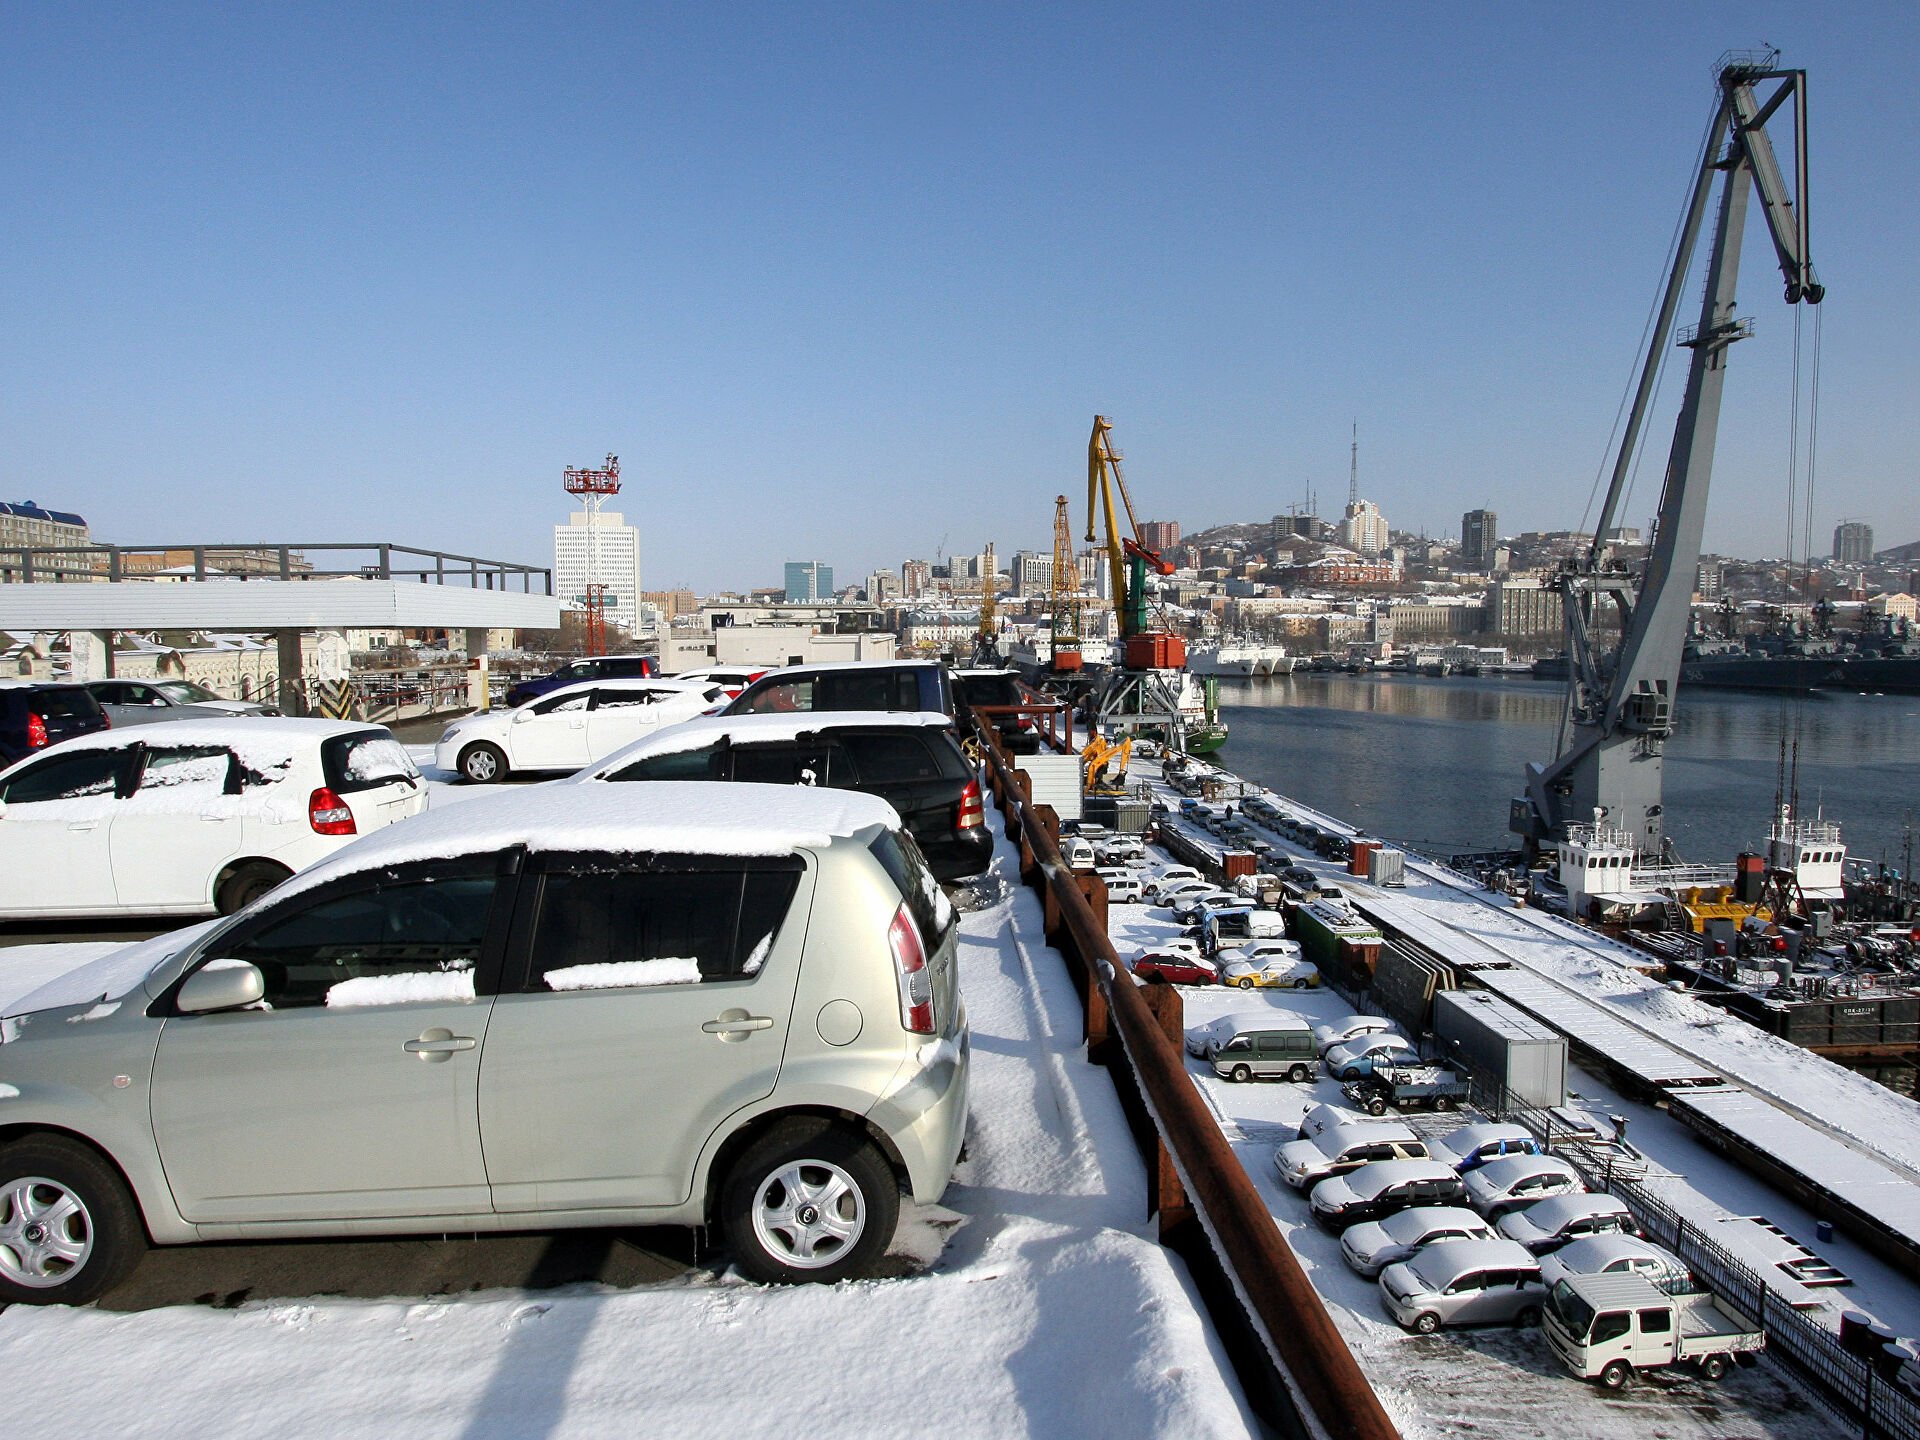 Машины во владивостоке из японии цена. Автомобили в порту. Порт Владивостока автомобили. Авто в порту Владивосток. Японские автомобили на порту.